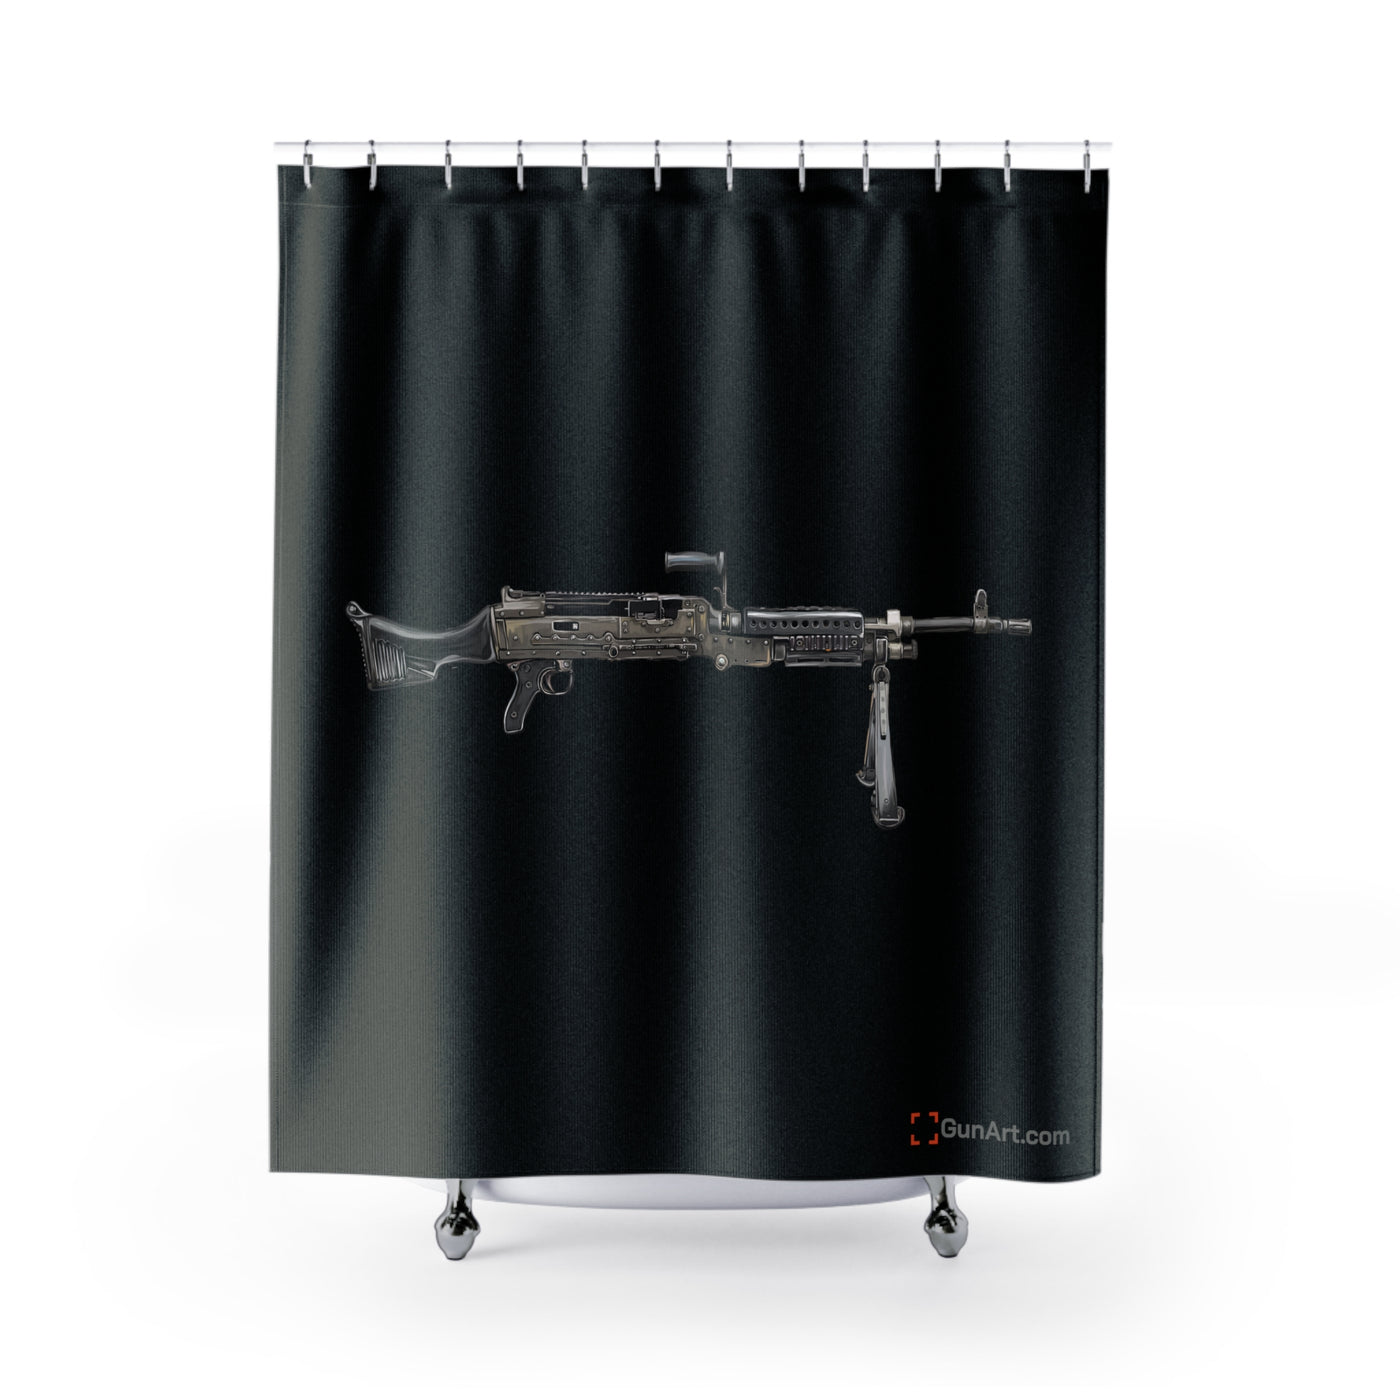 M240B - Belt Fed 7.62x51 Machine Gun Shower Curtains - Just The Piece - Black Background